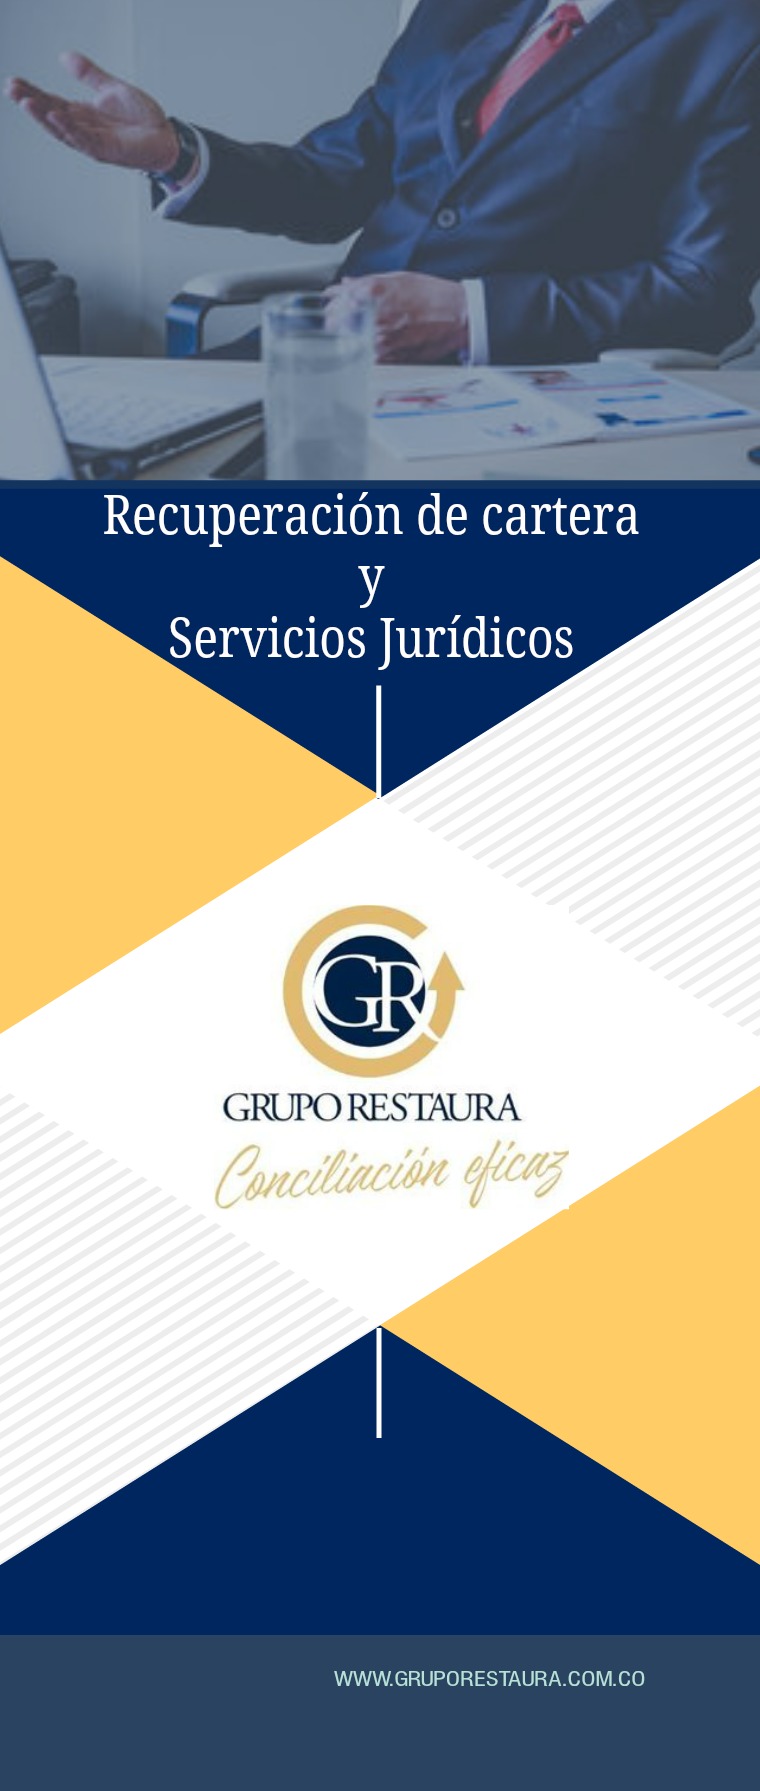 GRUPO JURÏDICO RESTAURA Grupo Jurídico Restaura